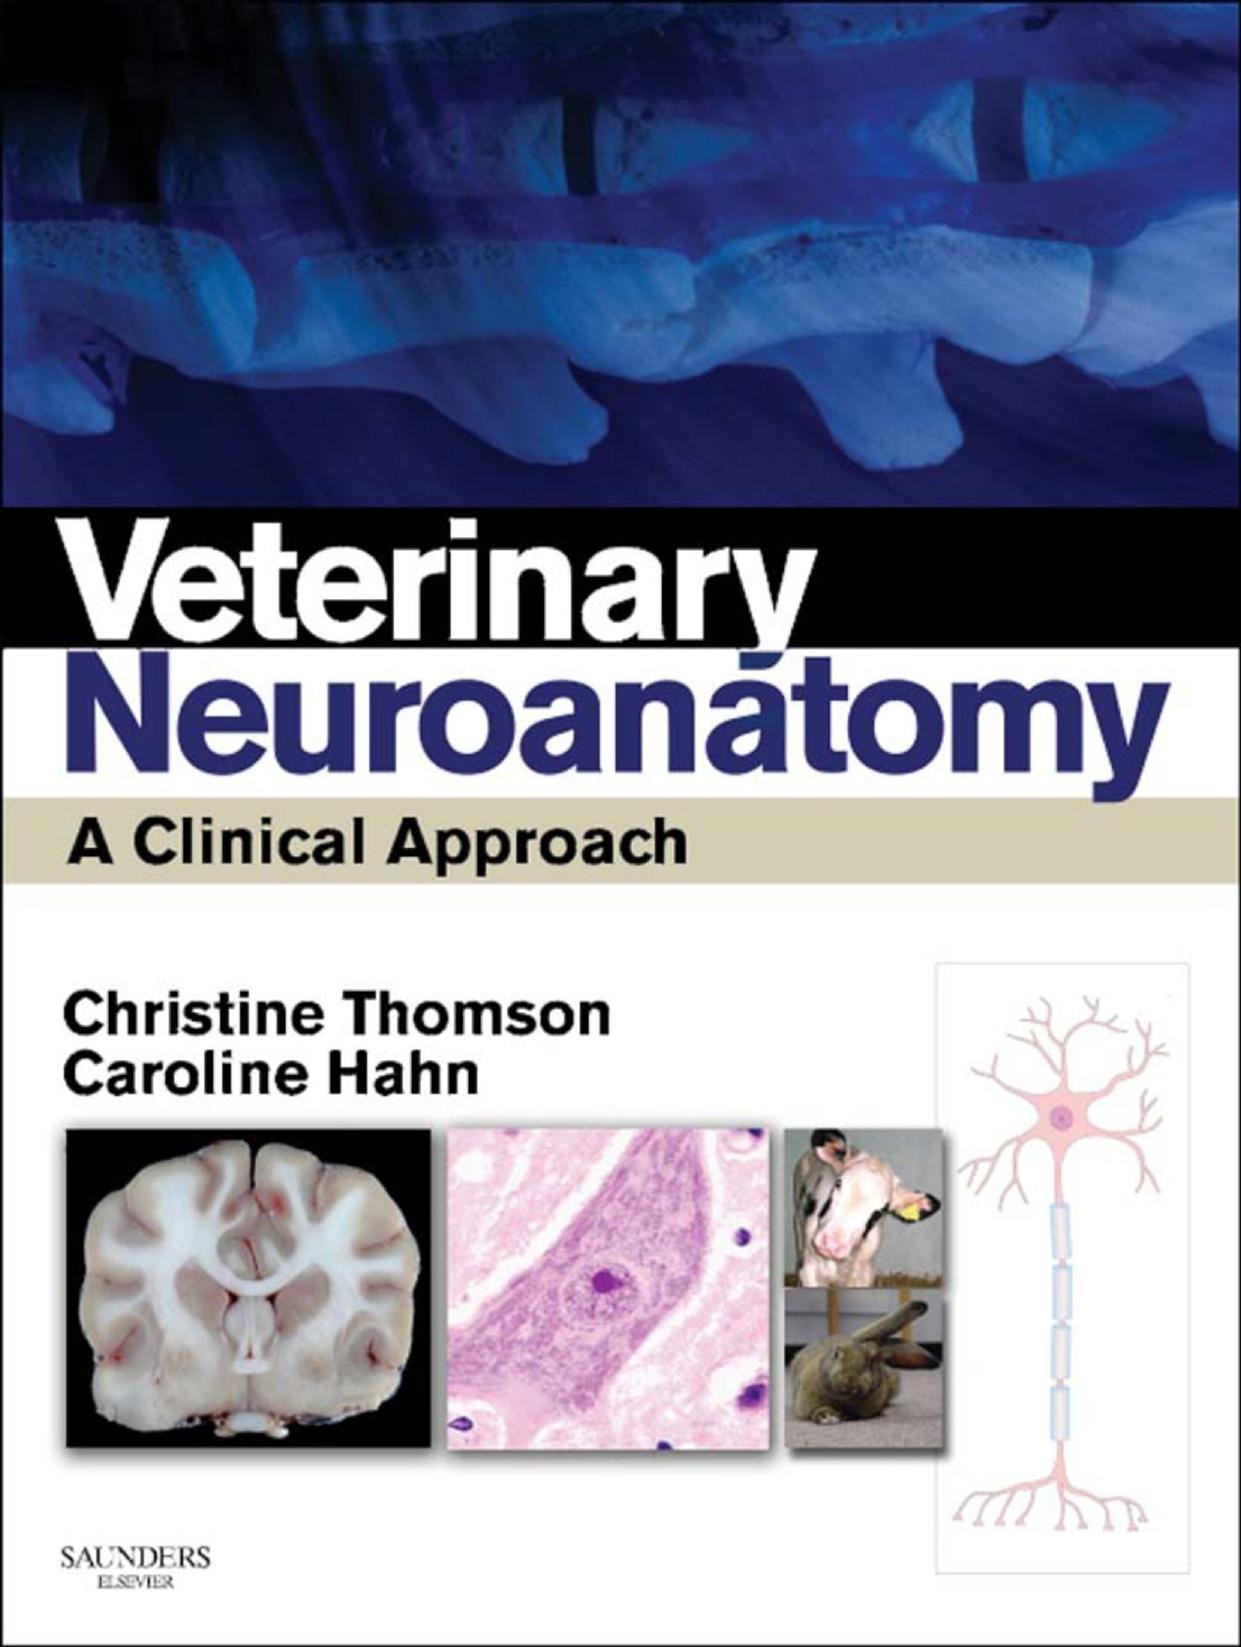 Veterinary Neuroanatomy - A Clinical Approach